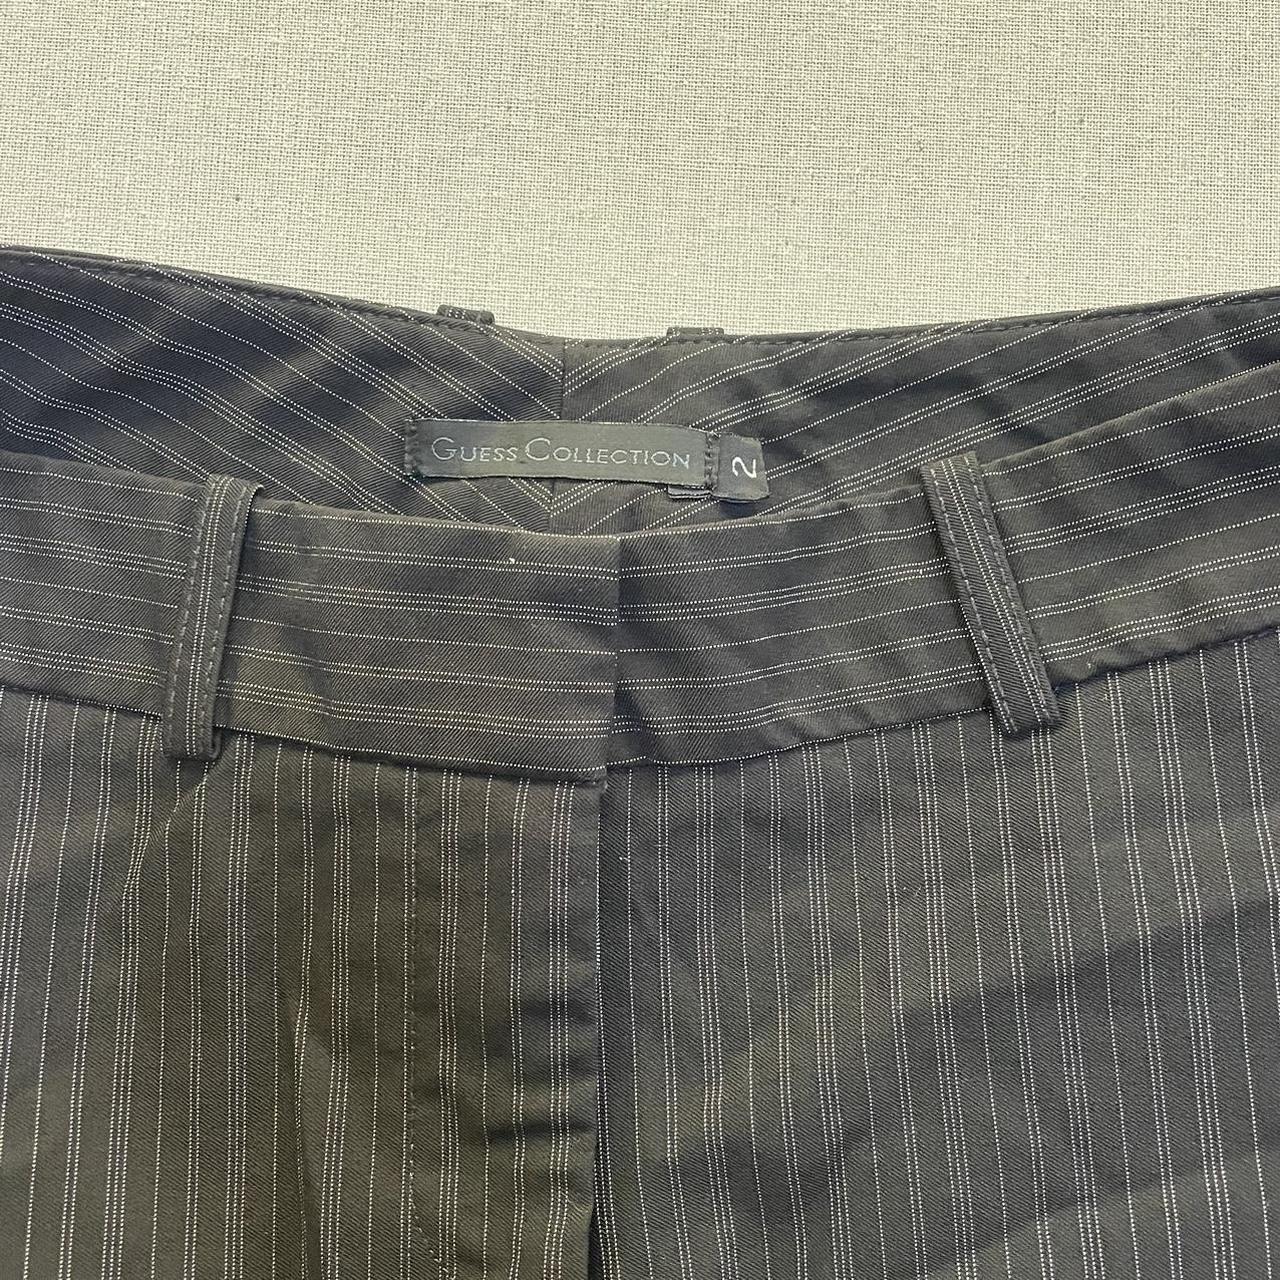 Vintage Guess pin stripe mini skirt size: 2... - Depop